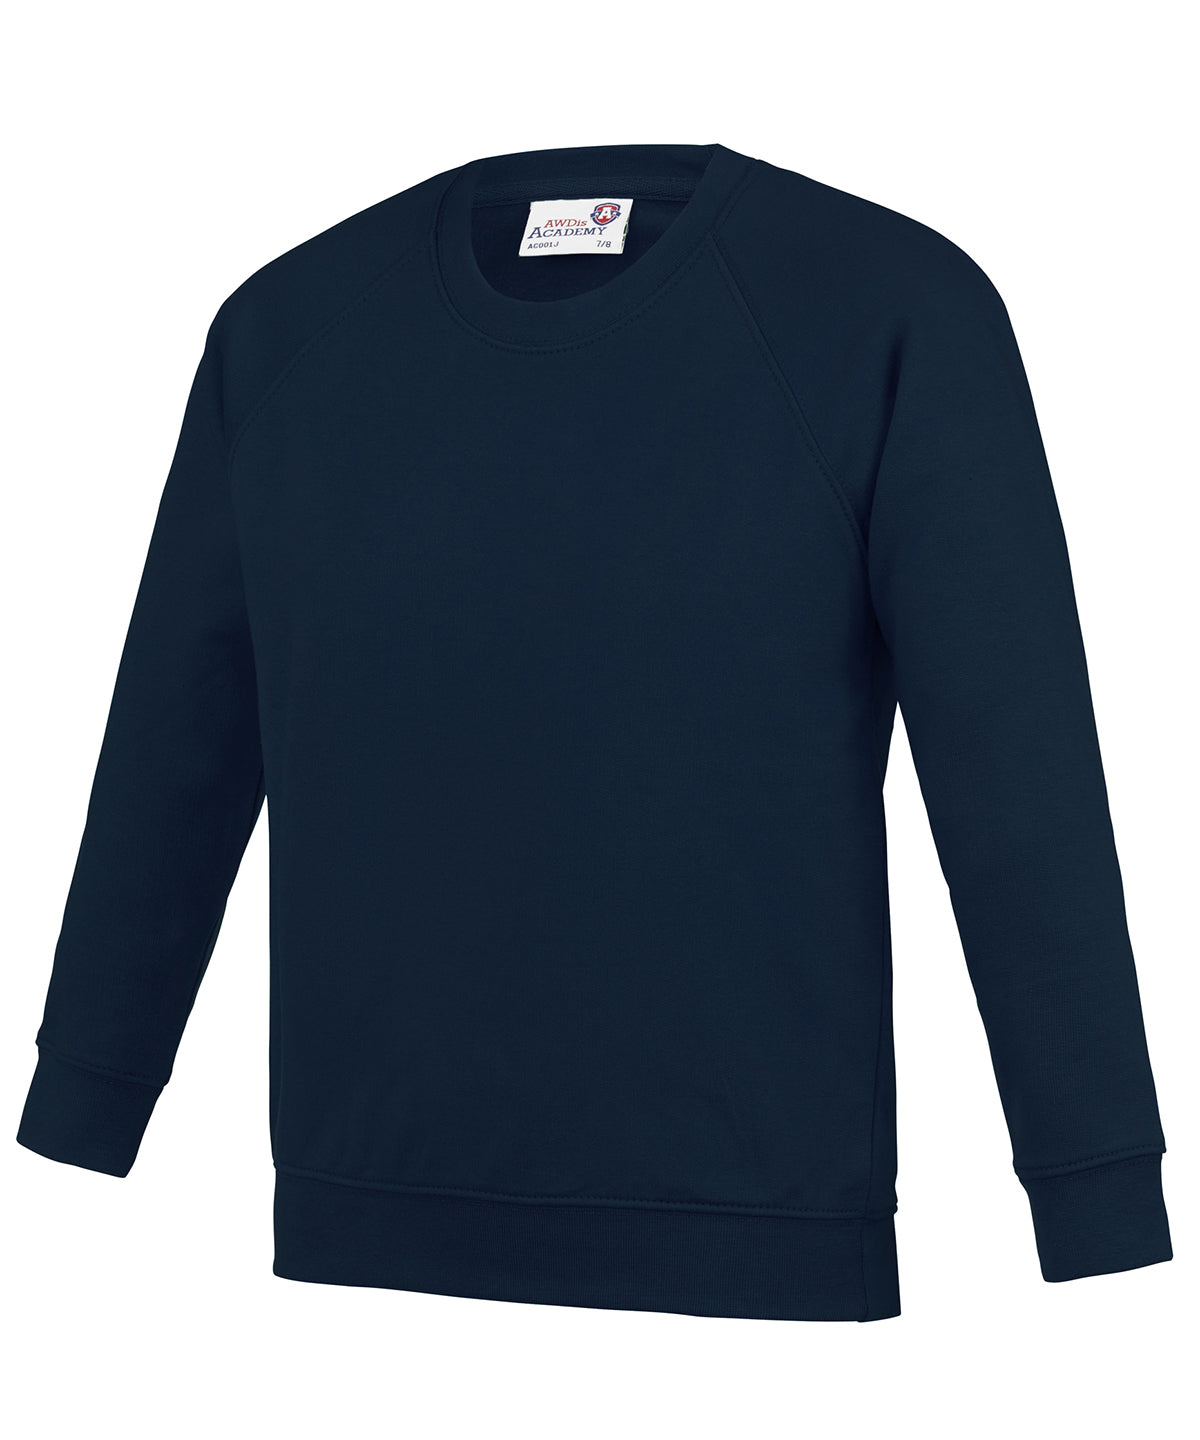 Personalised Sweatshirts - Burgundy AWDis Academy Kids Academy raglan sweatshirt